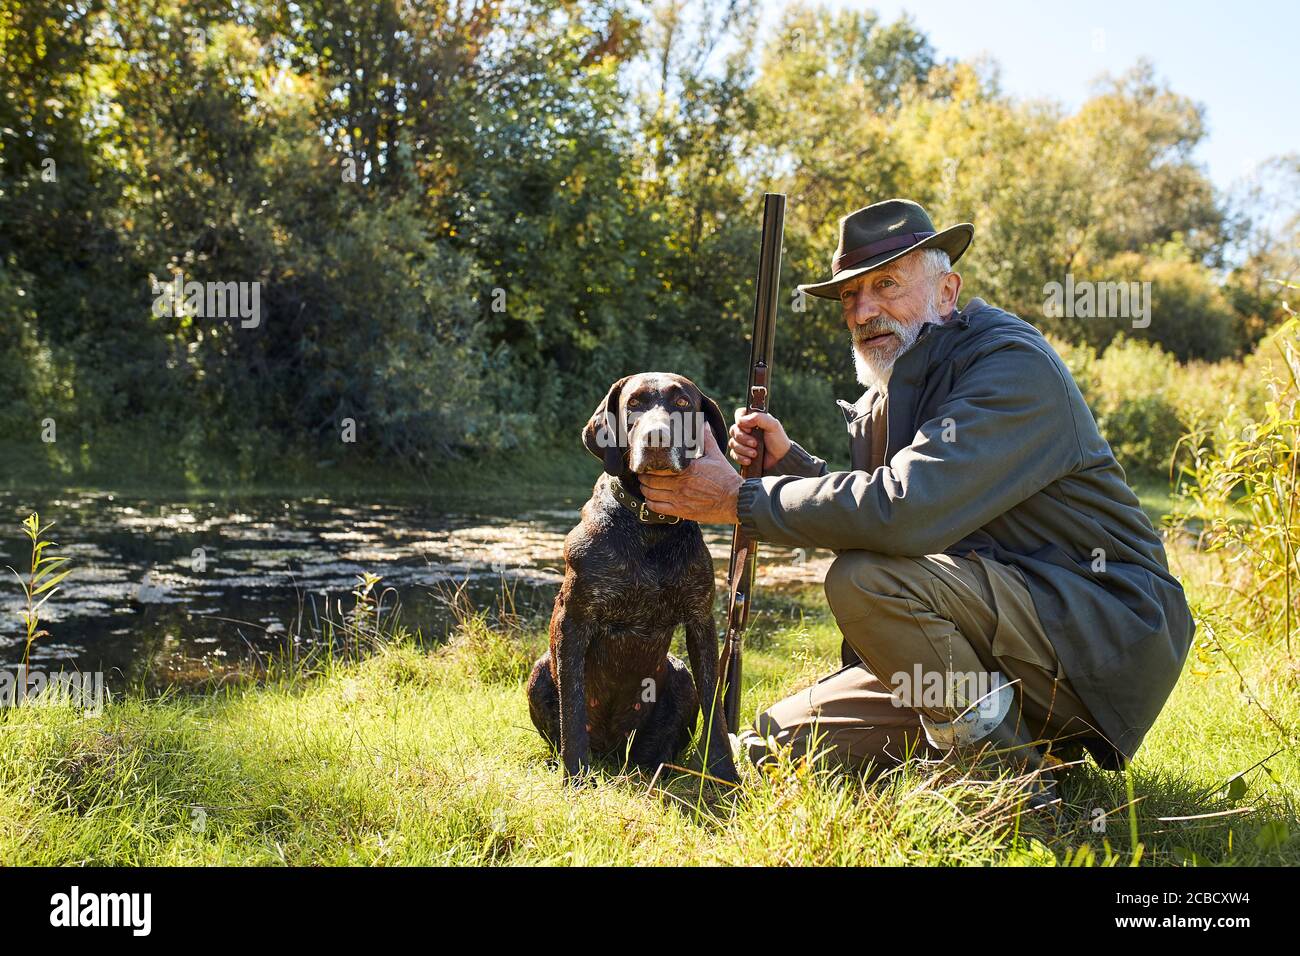 Uomo anziano dall'aspetto bello soddisfatto della caccia sul lago, siediti accanto al suo cane, in foresta, giorno di sole Foto Stock